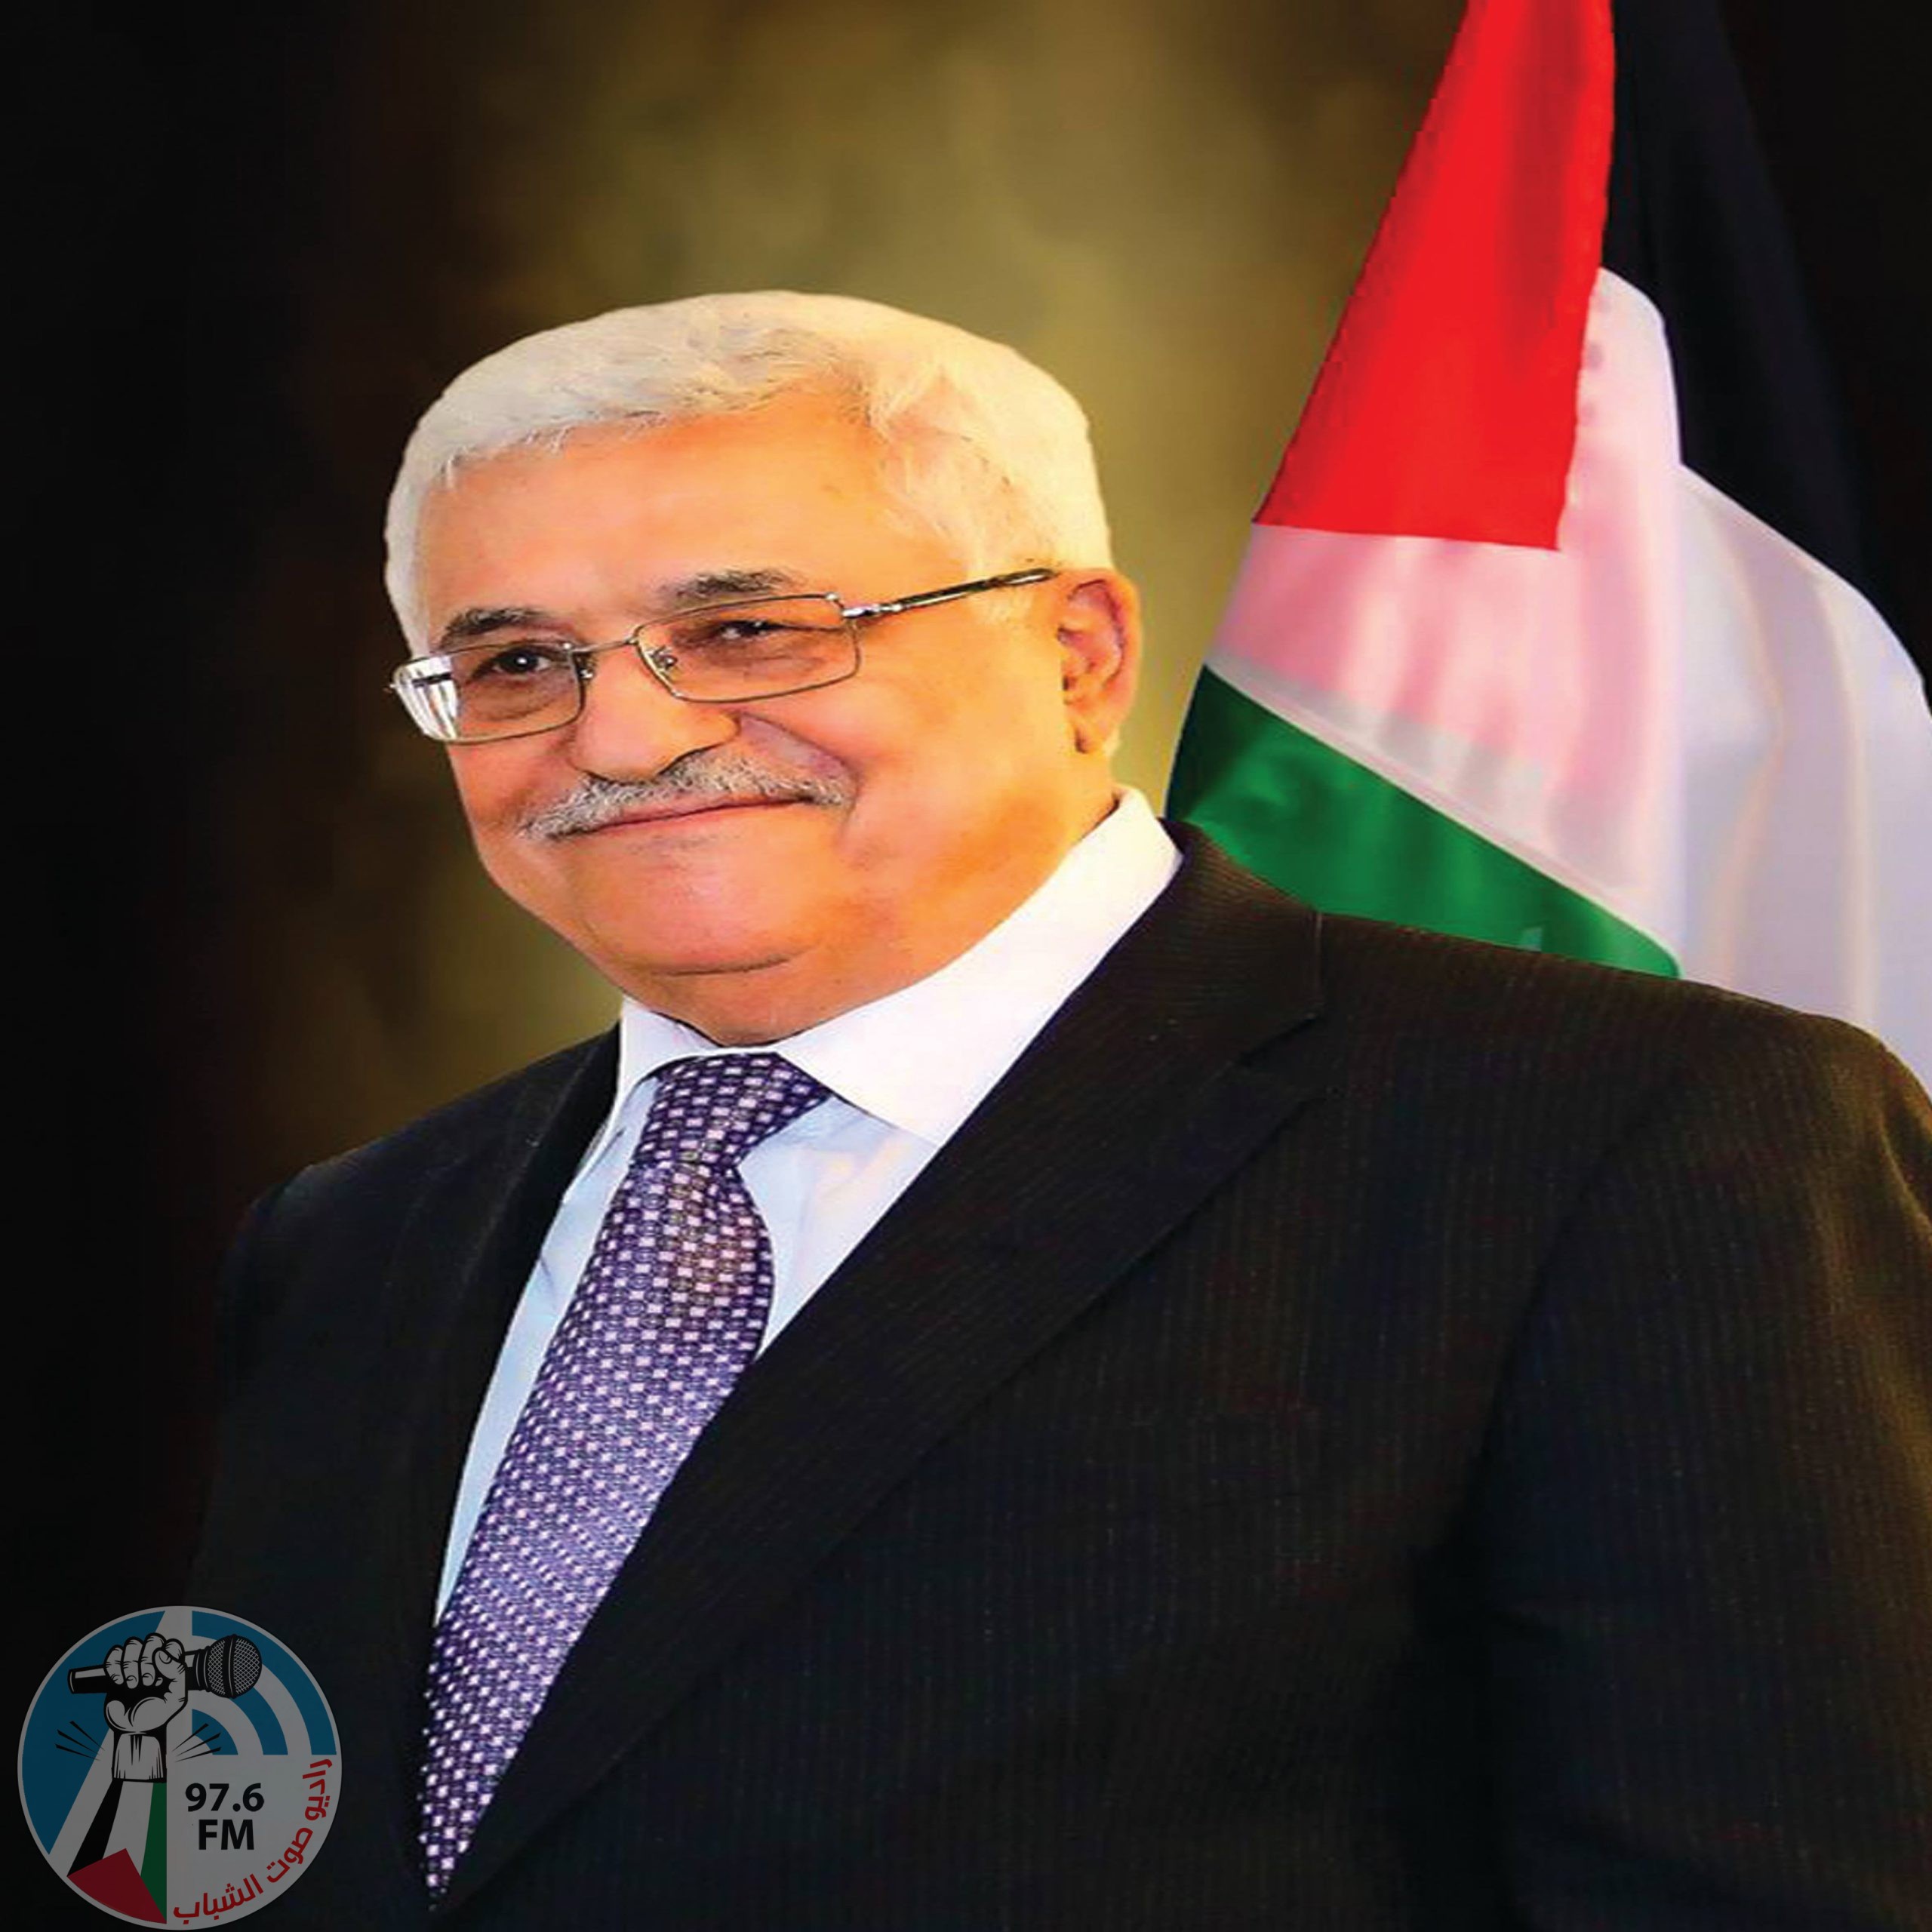 الجالية والمنظمات الشعبية الفلسطينية في العراق تستنكر الحملة ضد الرئيس